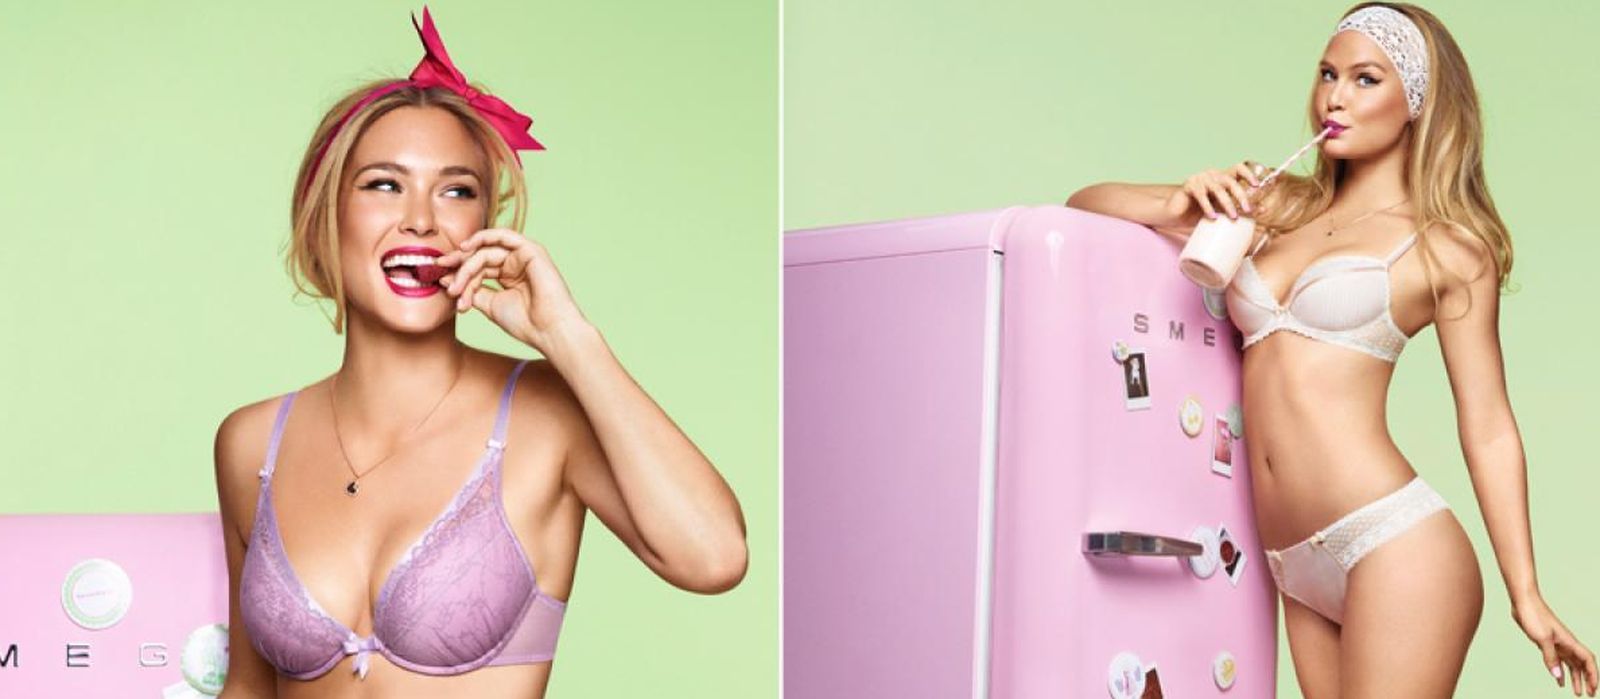 Foto: Nuestro sueño: estar en lingerie ante el frigorífico